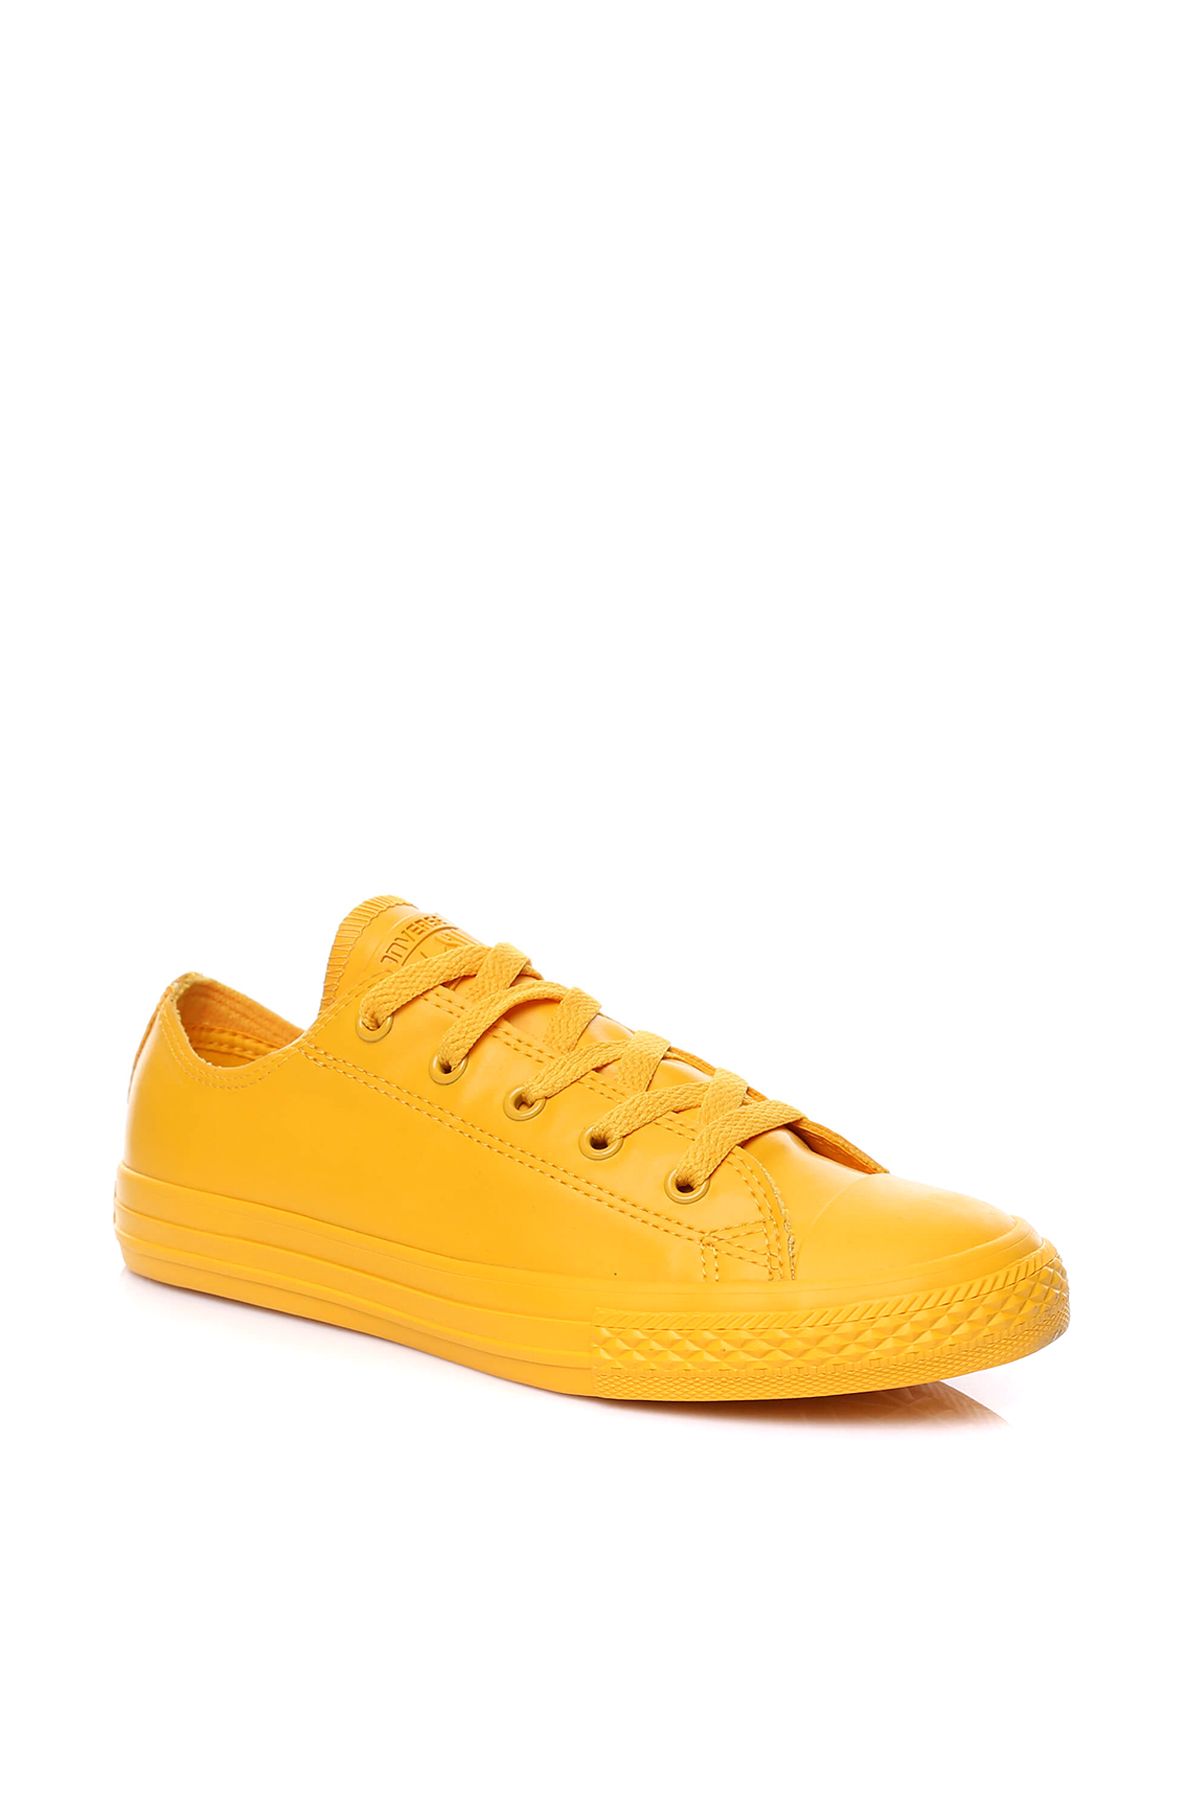 Converse Sarı Unisex Çocuk Ayakkabı /